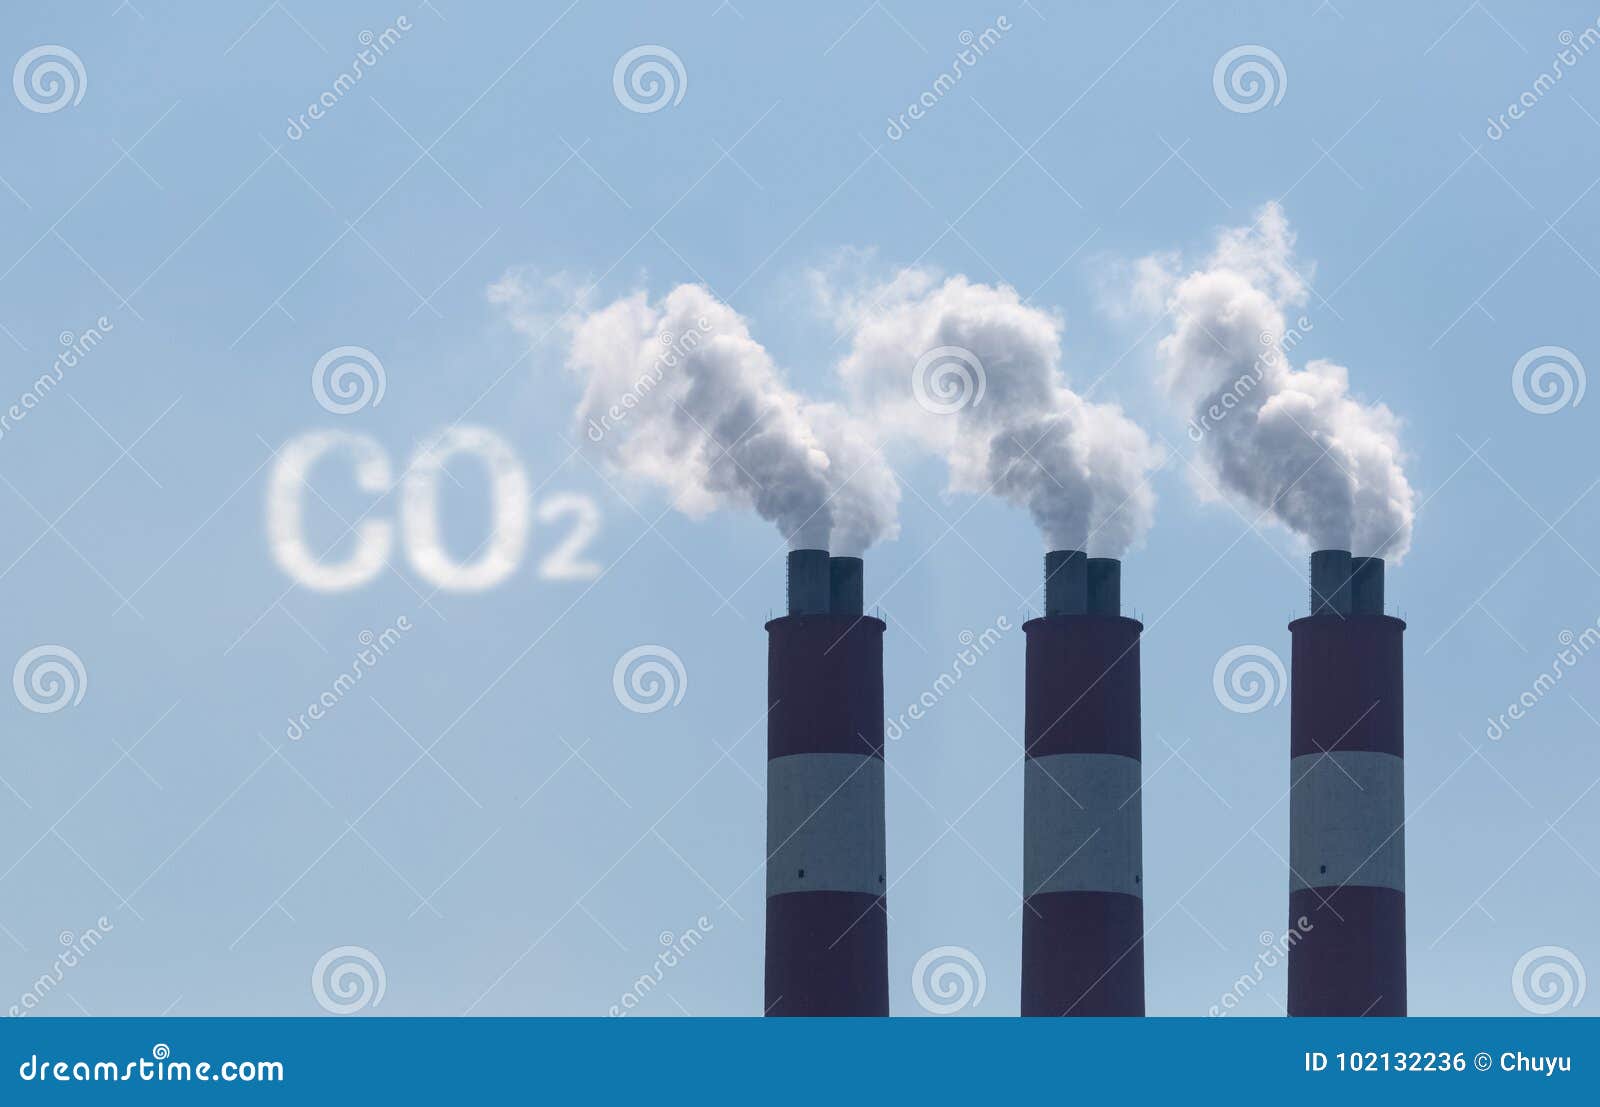 carbon dioxide emission